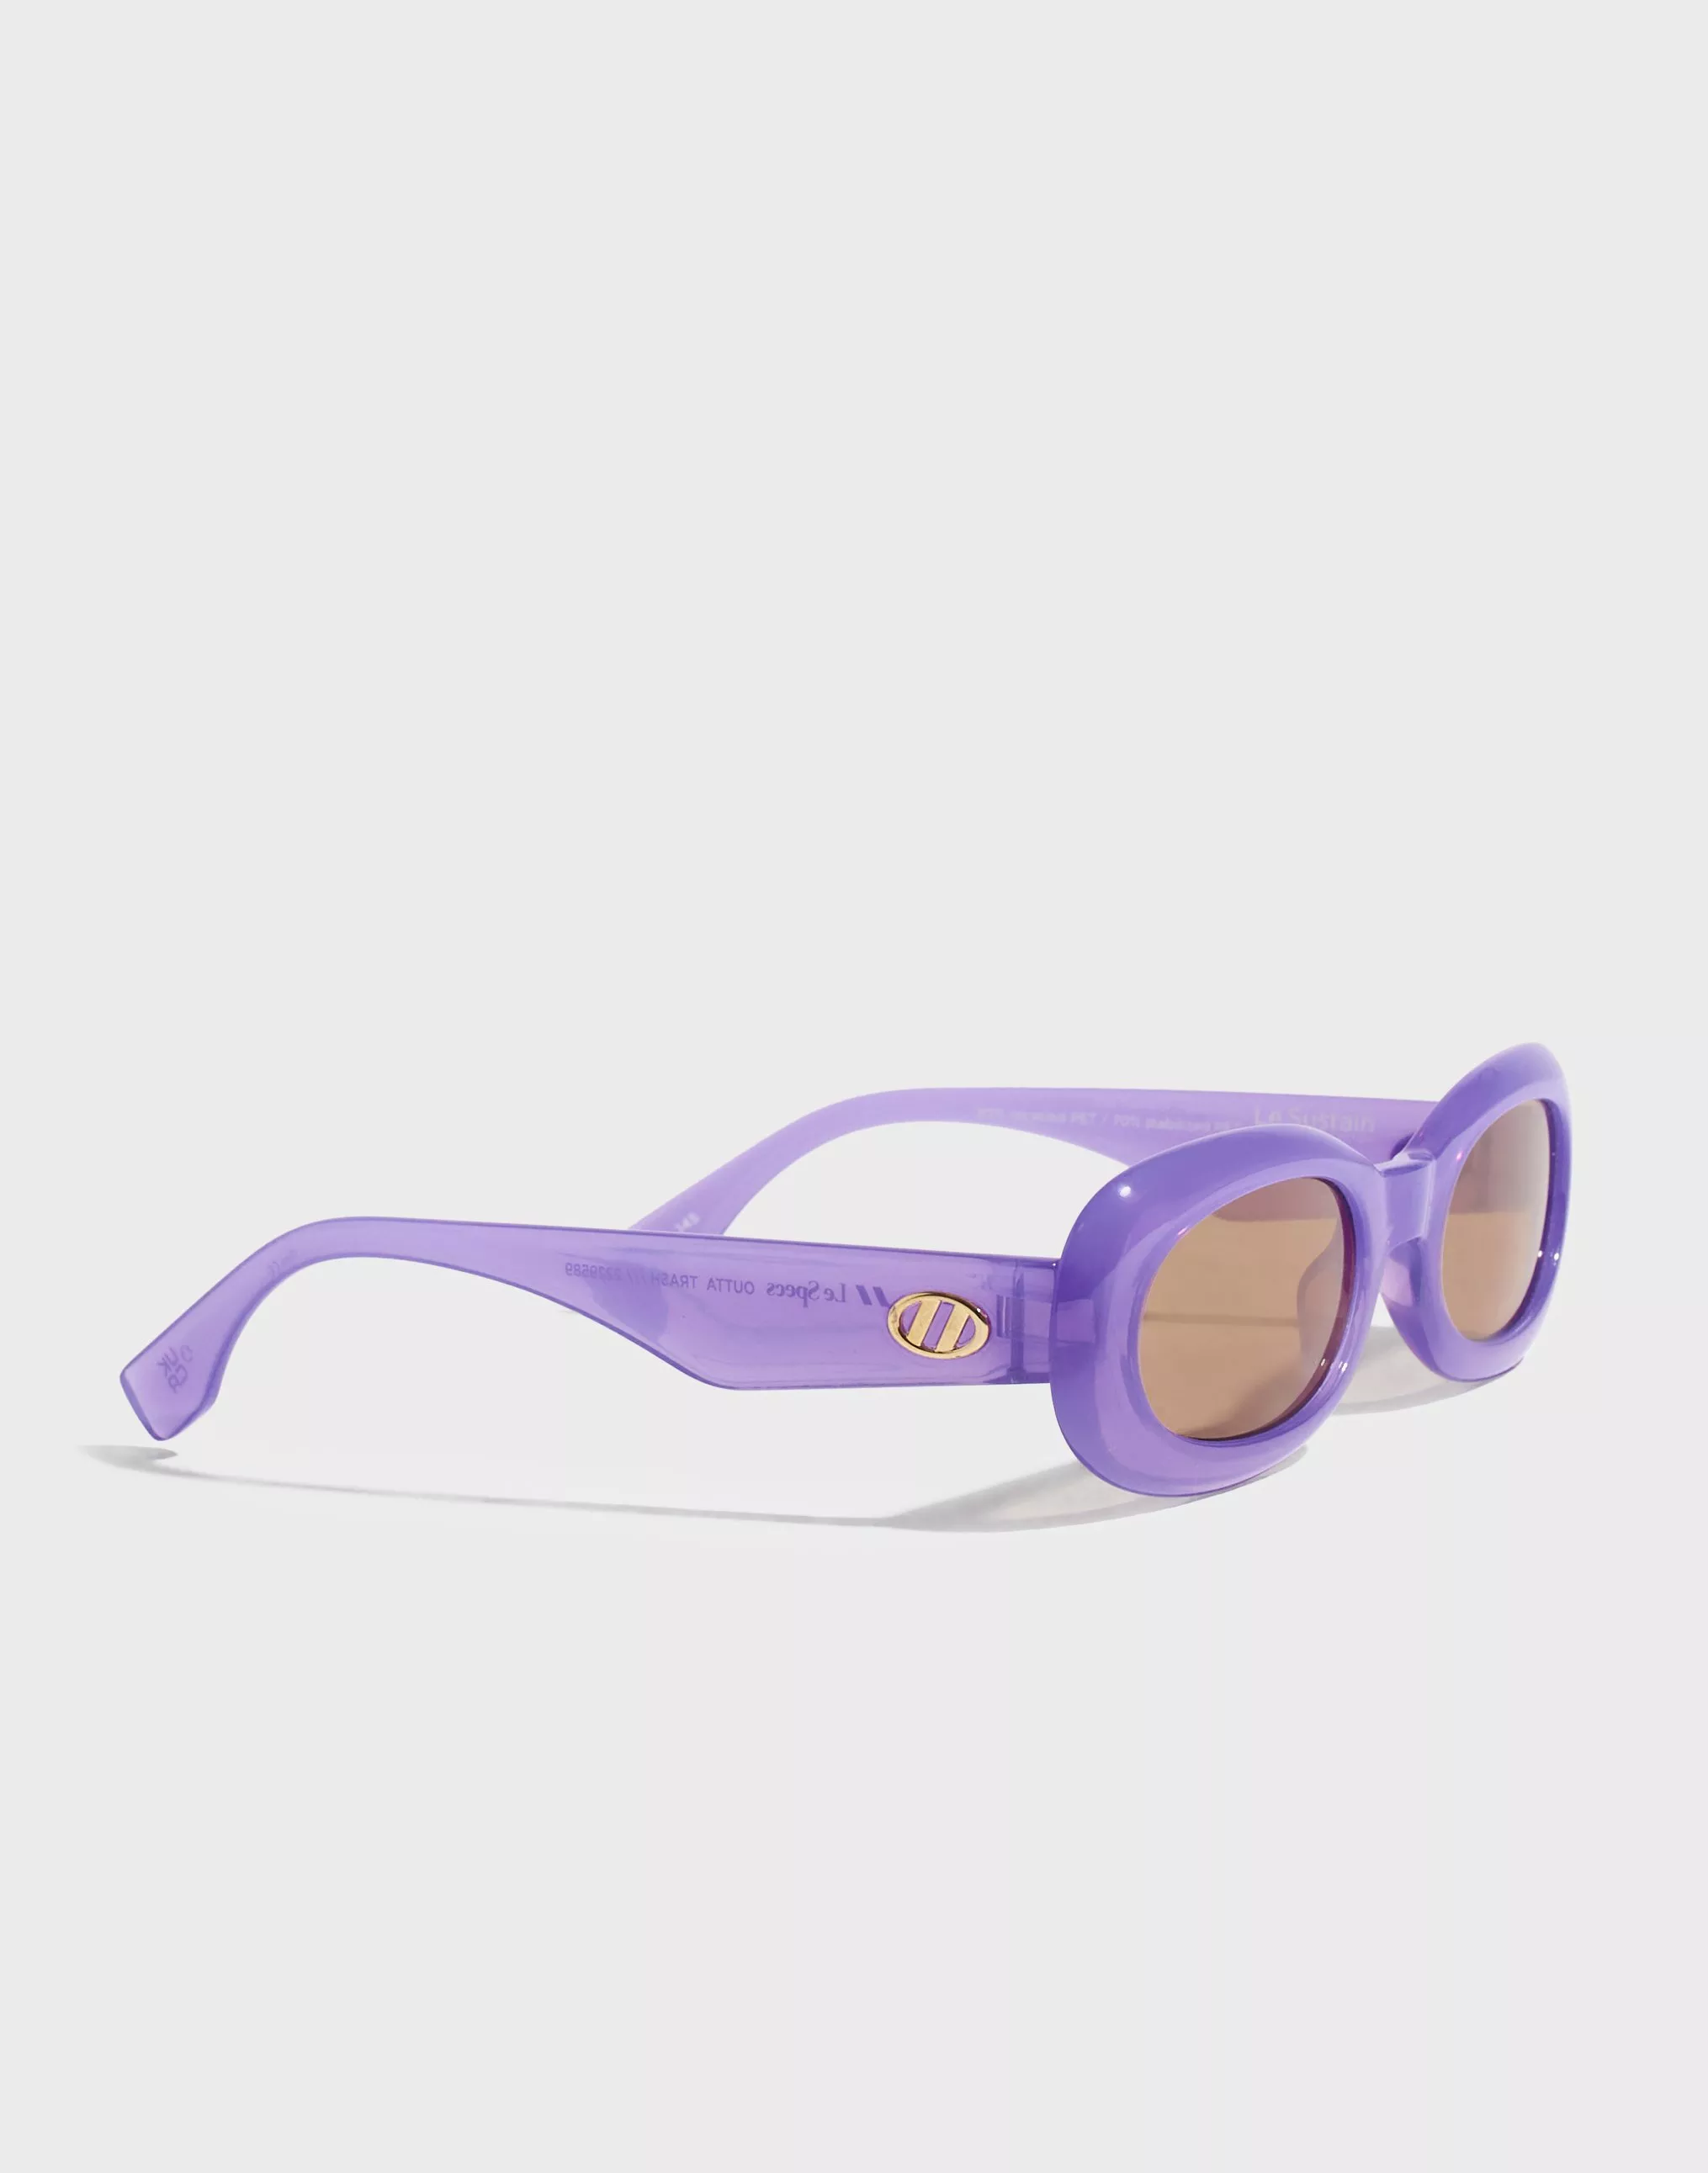 Le Specs Le Hitz Outta Sunglasses Lavender, Unisex